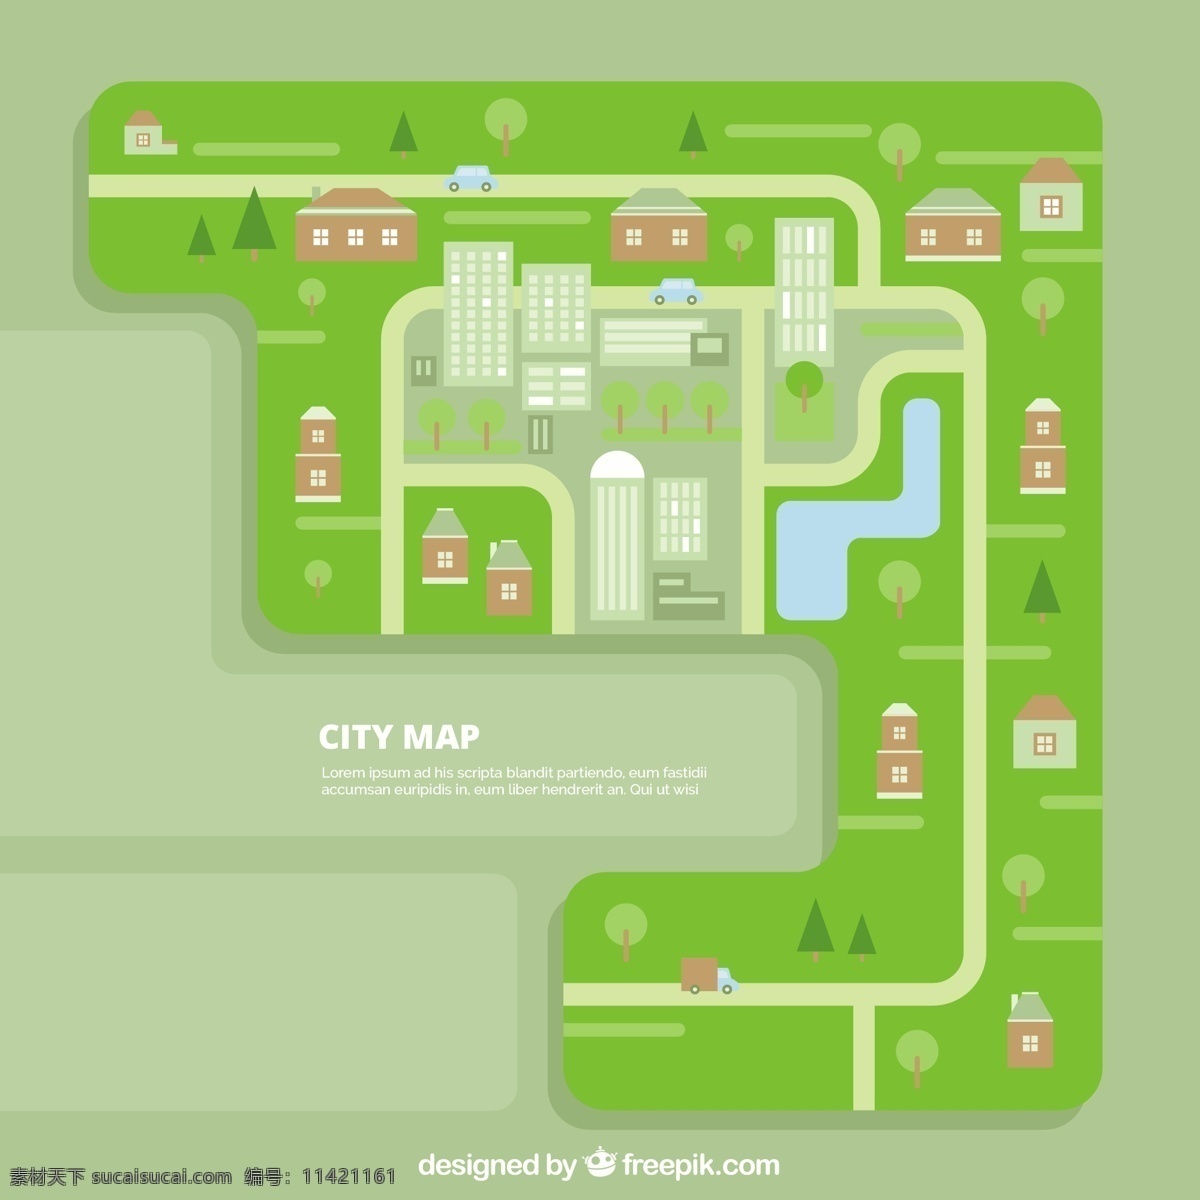 平面设计 中 城市地图 城市 地图 道路 数字 图形 平面 位置 街道 针 交通 点 全球定位系统 路线图 方向 导航 地图针 邮政 尼斯